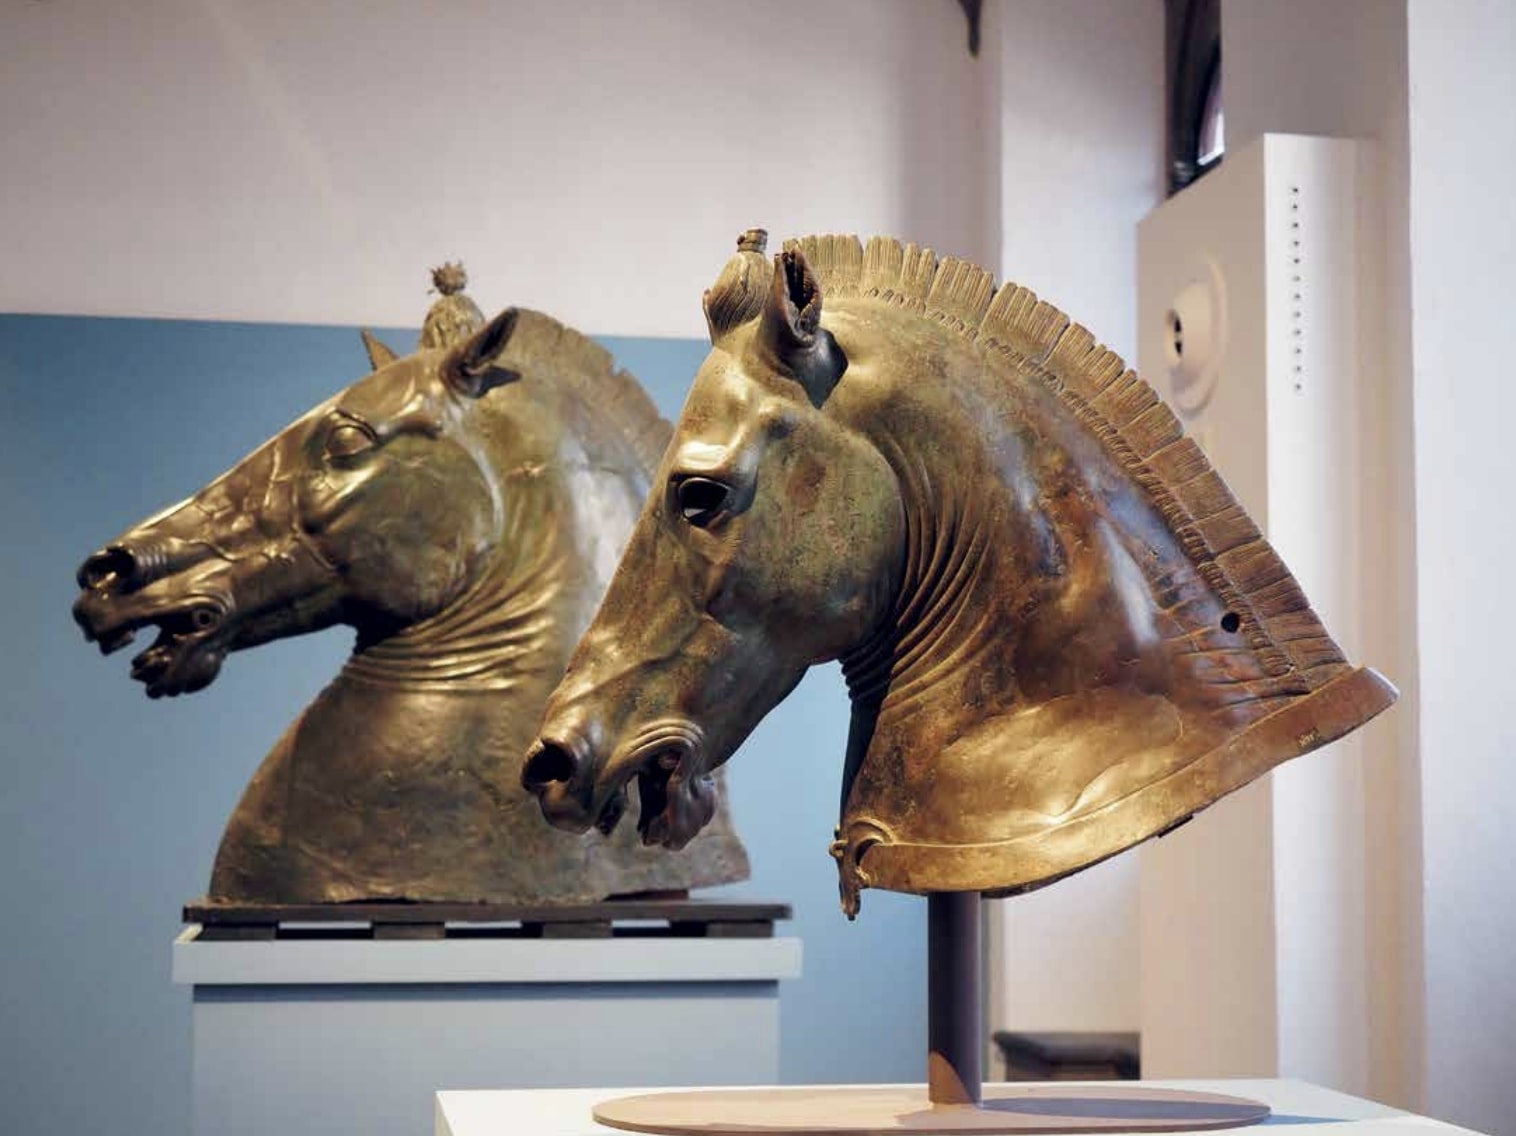 Ógörög lófejszobor, a háttérben pedig Donatello Testa di cavallója